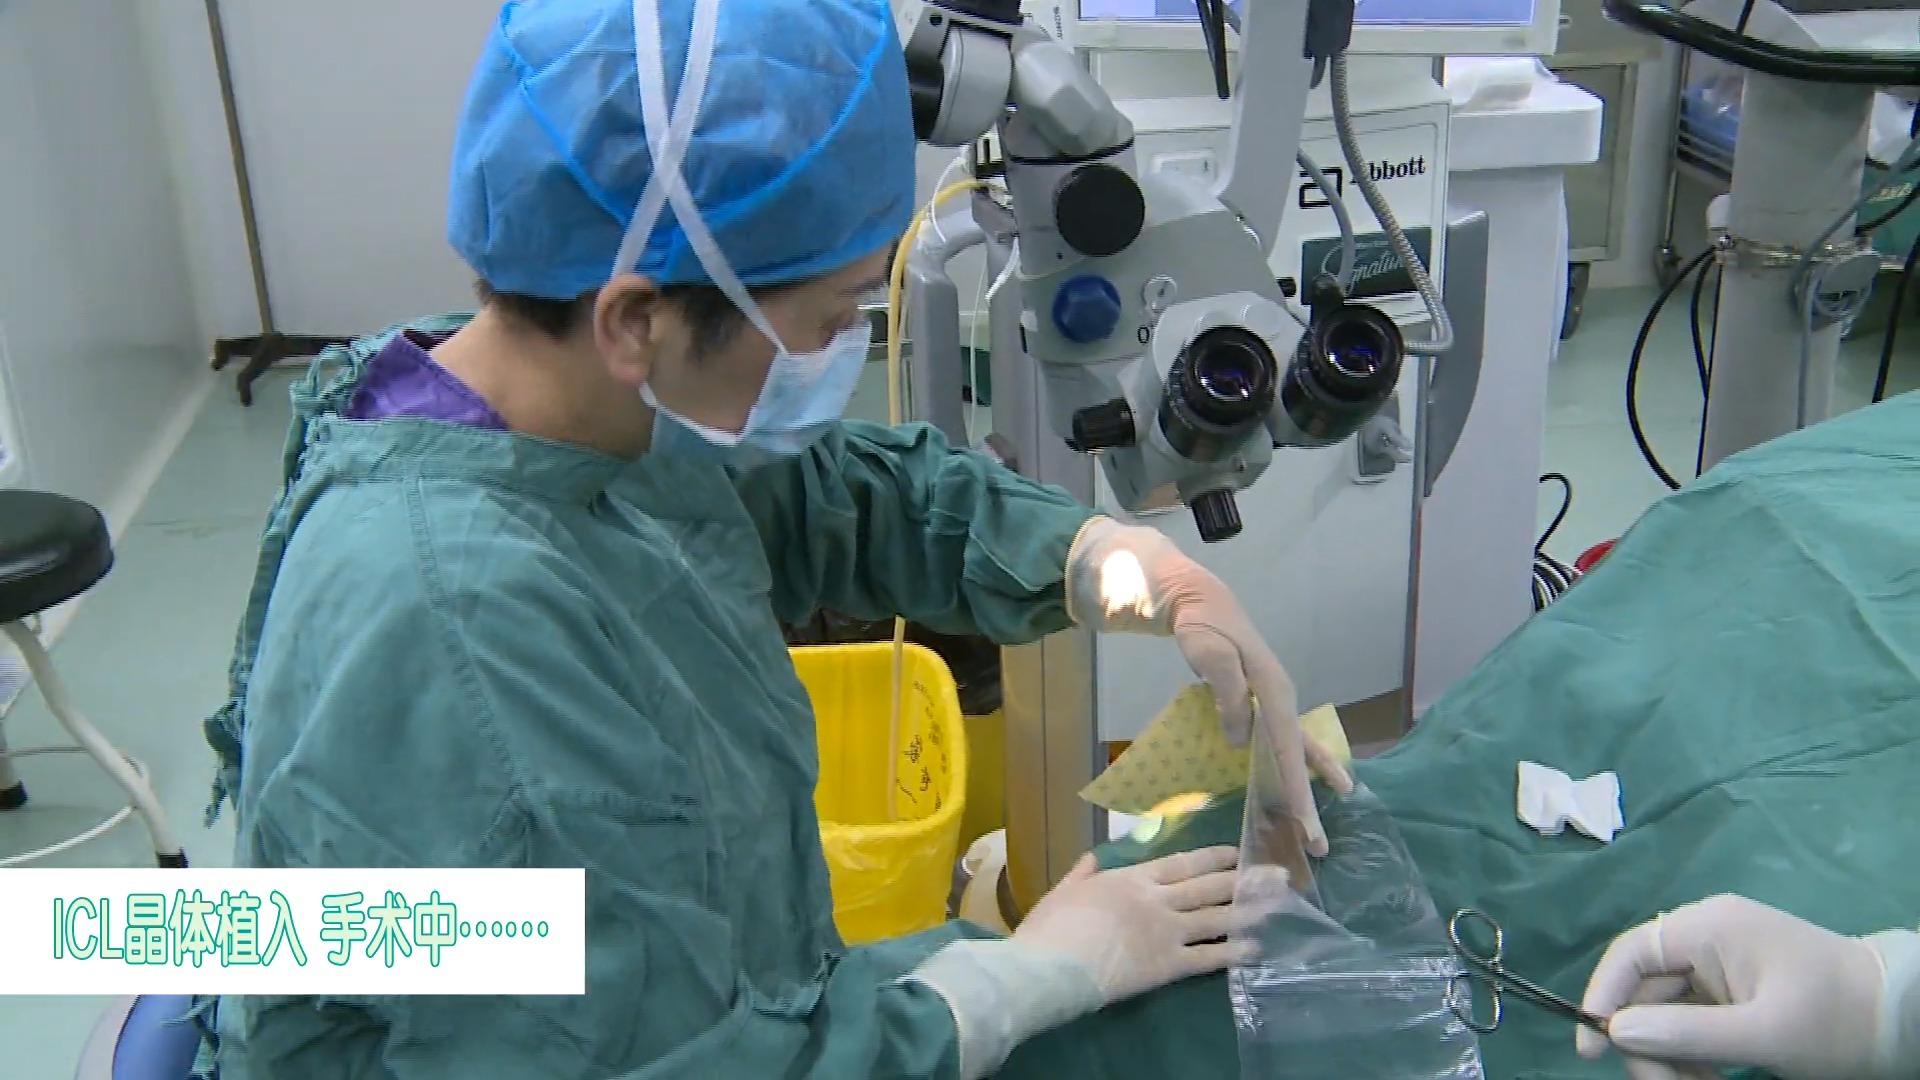 近视激光手术和icl晶体植入手术的区别是什么?